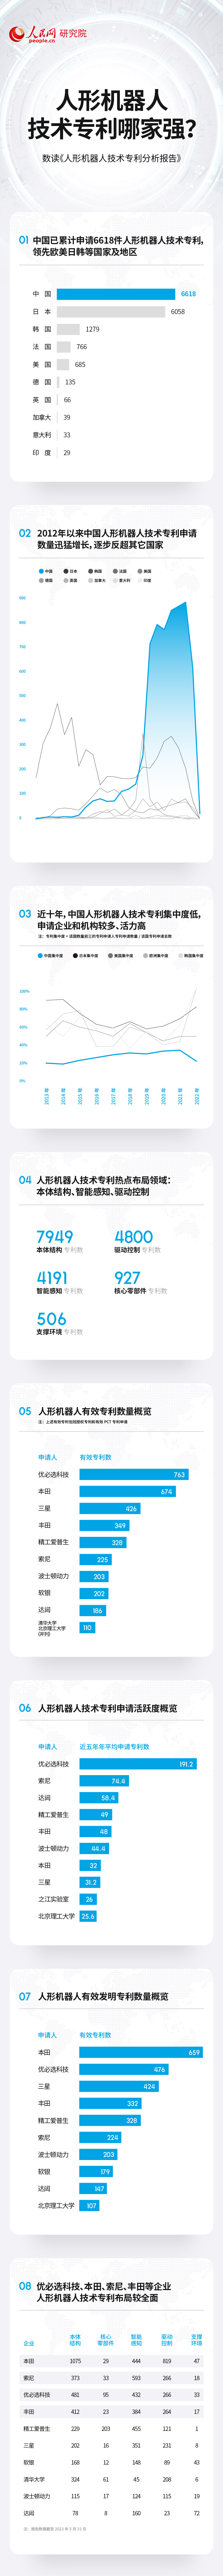 耀世：技术专利总数居前列 中国人形机器人产业蓬勃发展